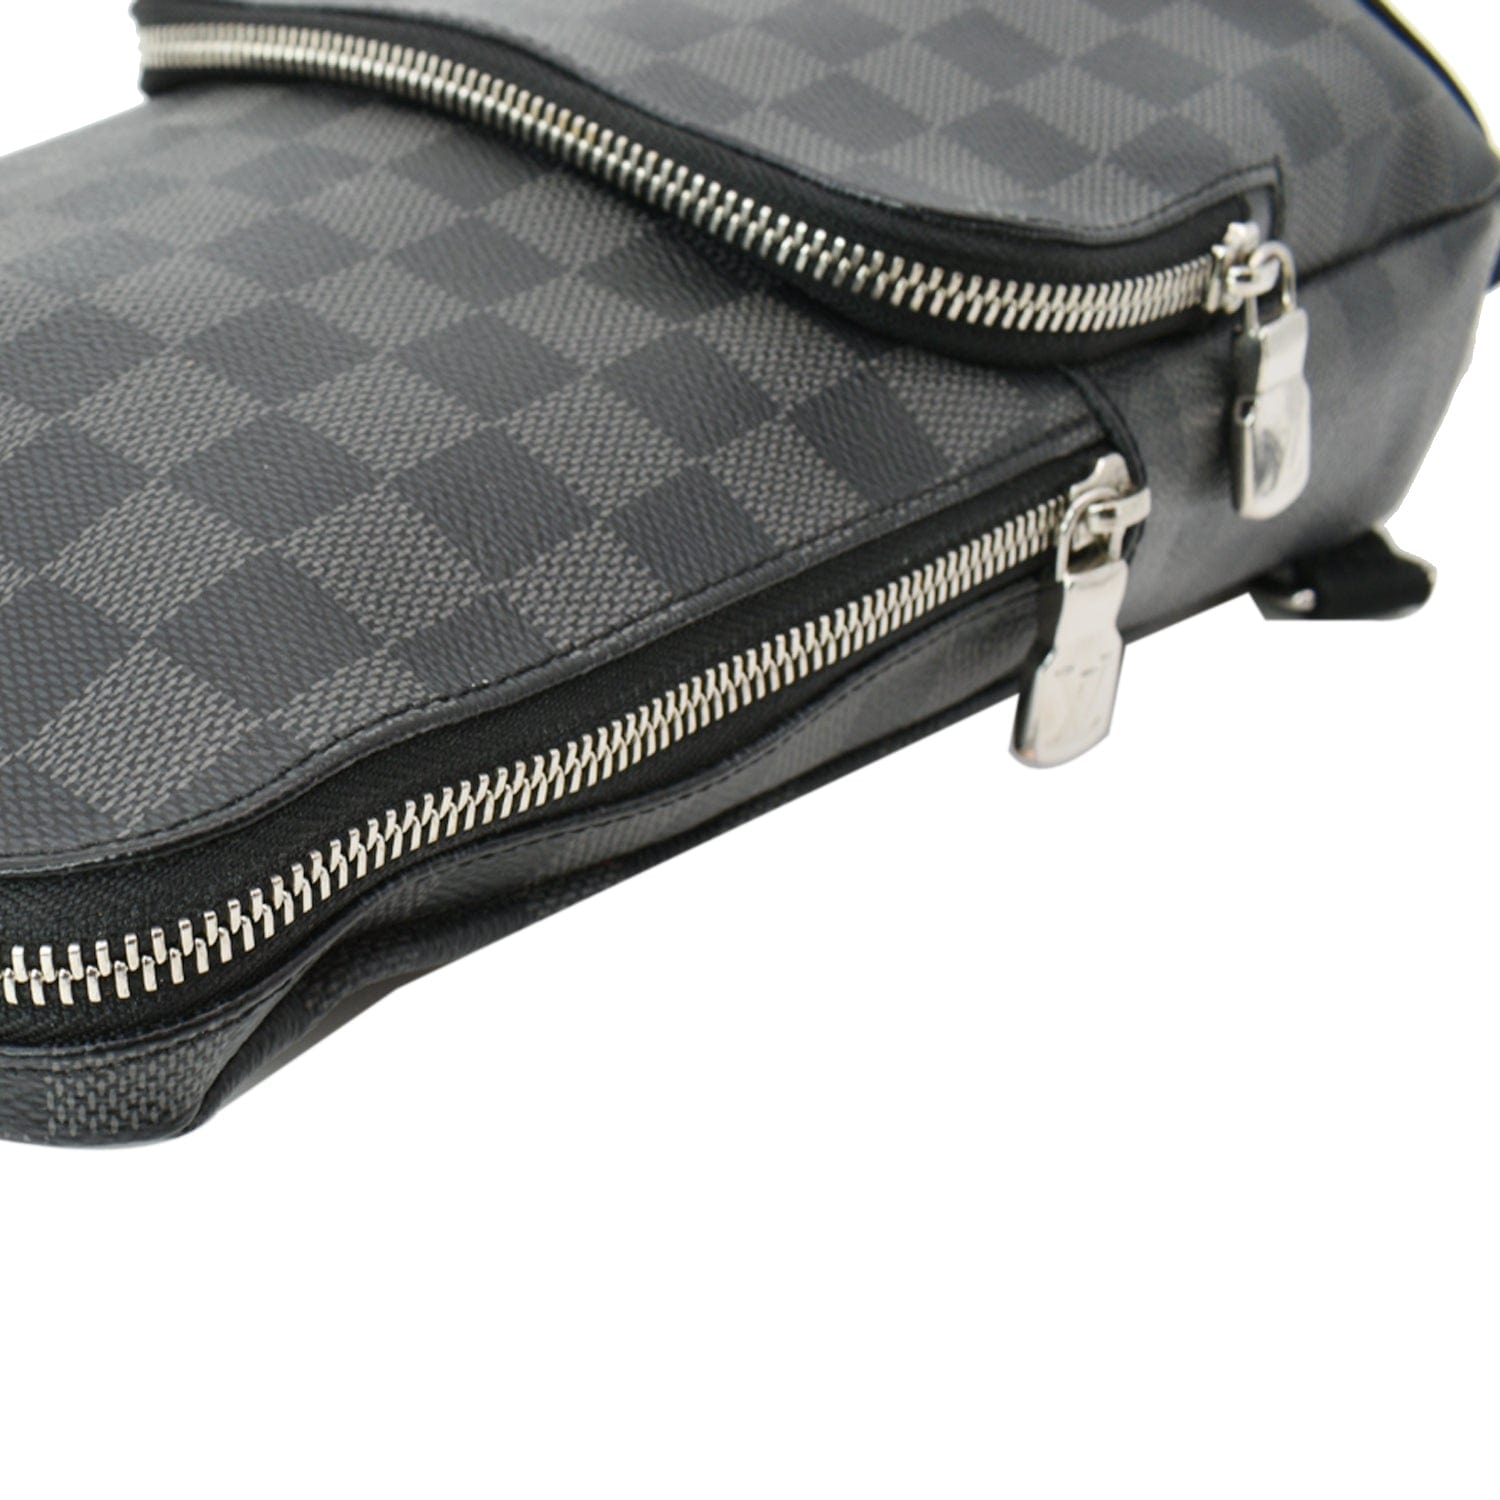  Louis Vuitton Sling Bag